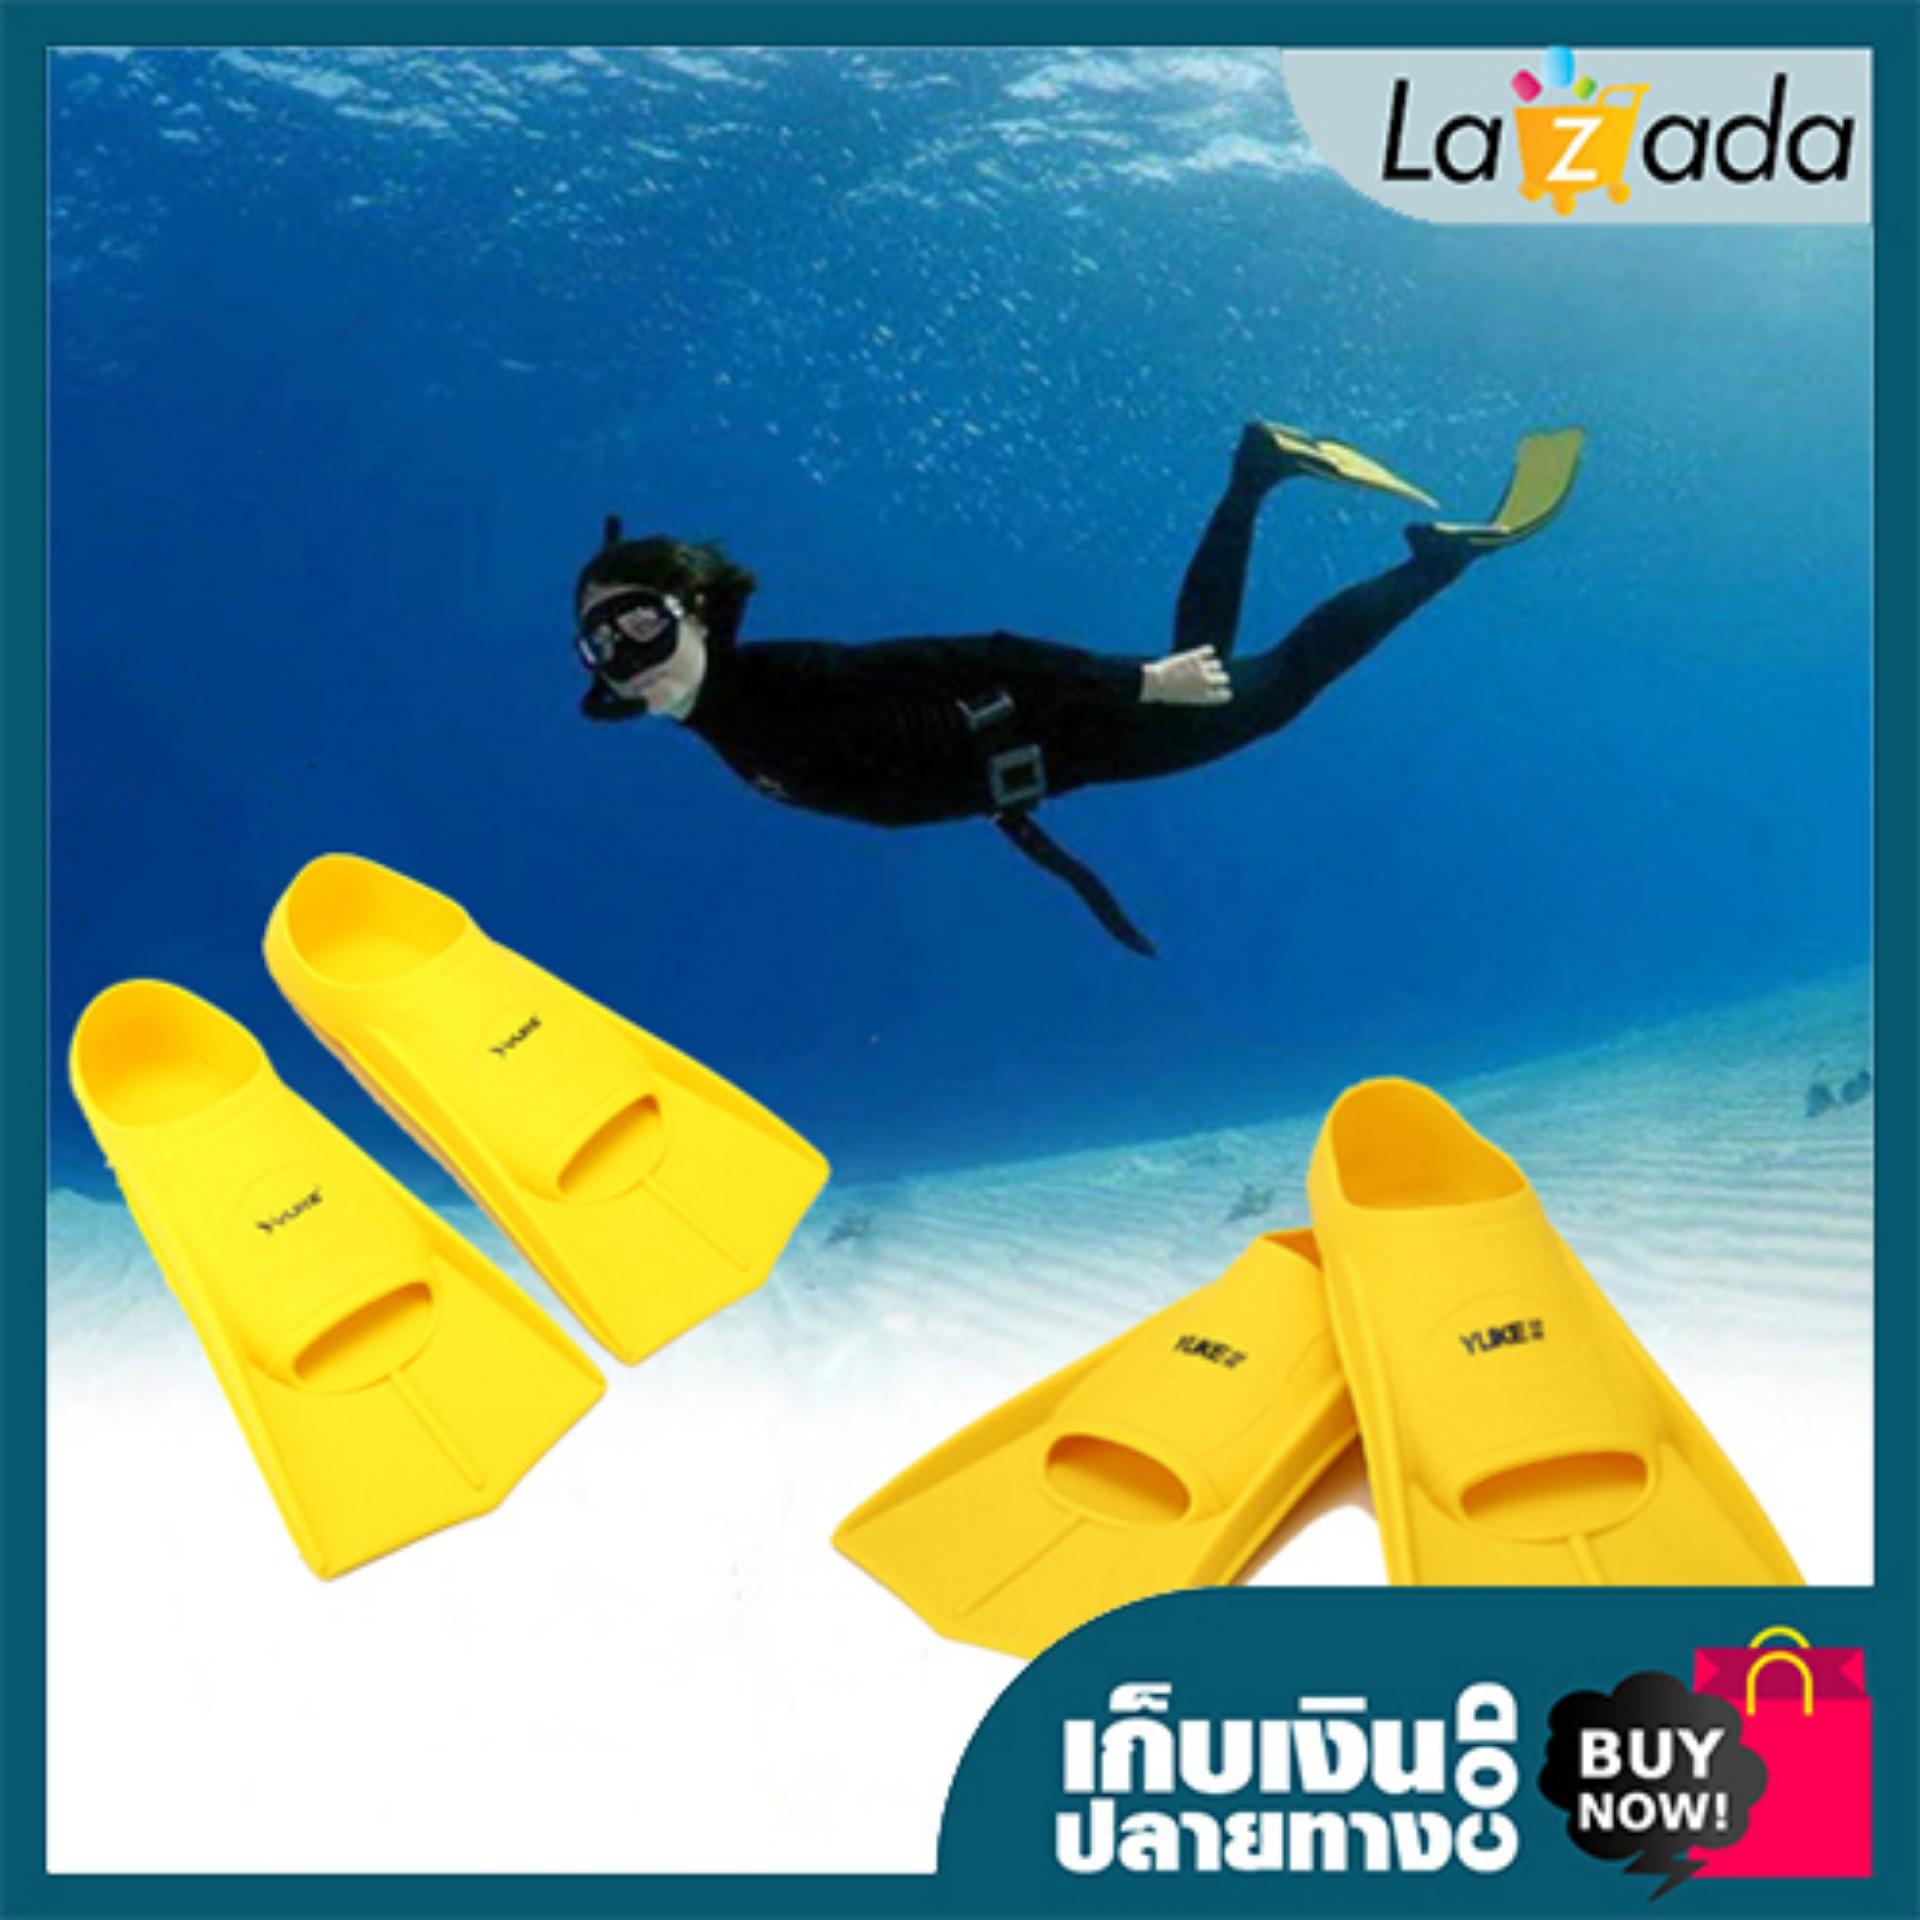 รองเท้าตีนกบ Yuke สำหรับใส่ว่ายน้ำ ดำน้ำ เพิ่มความคล่องตัวขณะอยู่ใต้ผิวน้ำ สี เหลือง มี 3 Size ให้เลือก